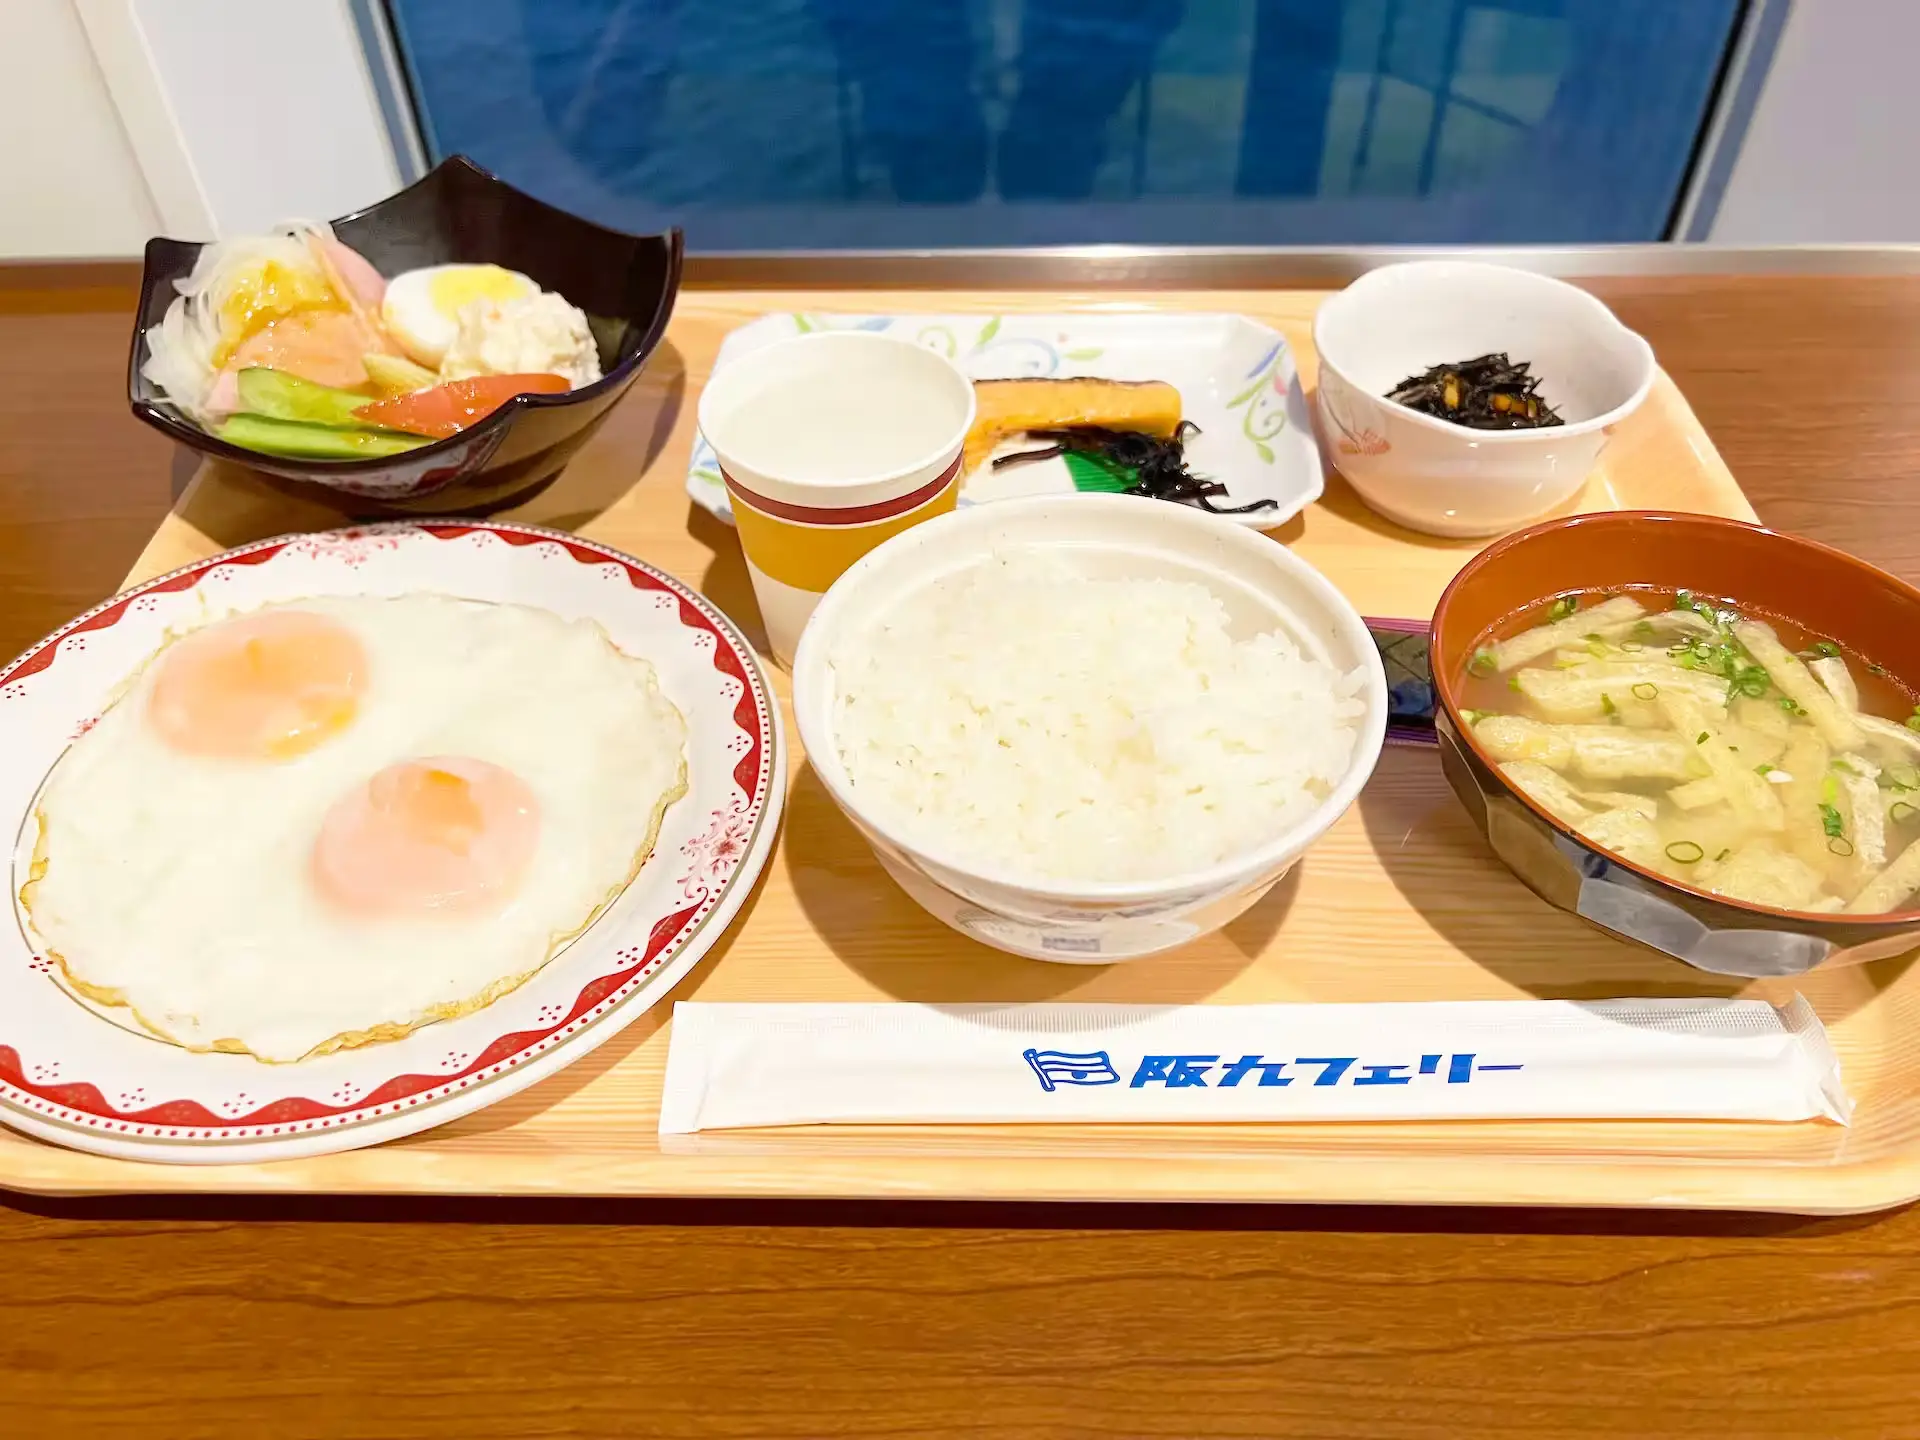 阪九轮渡大和号船内餐厅早餐菜单